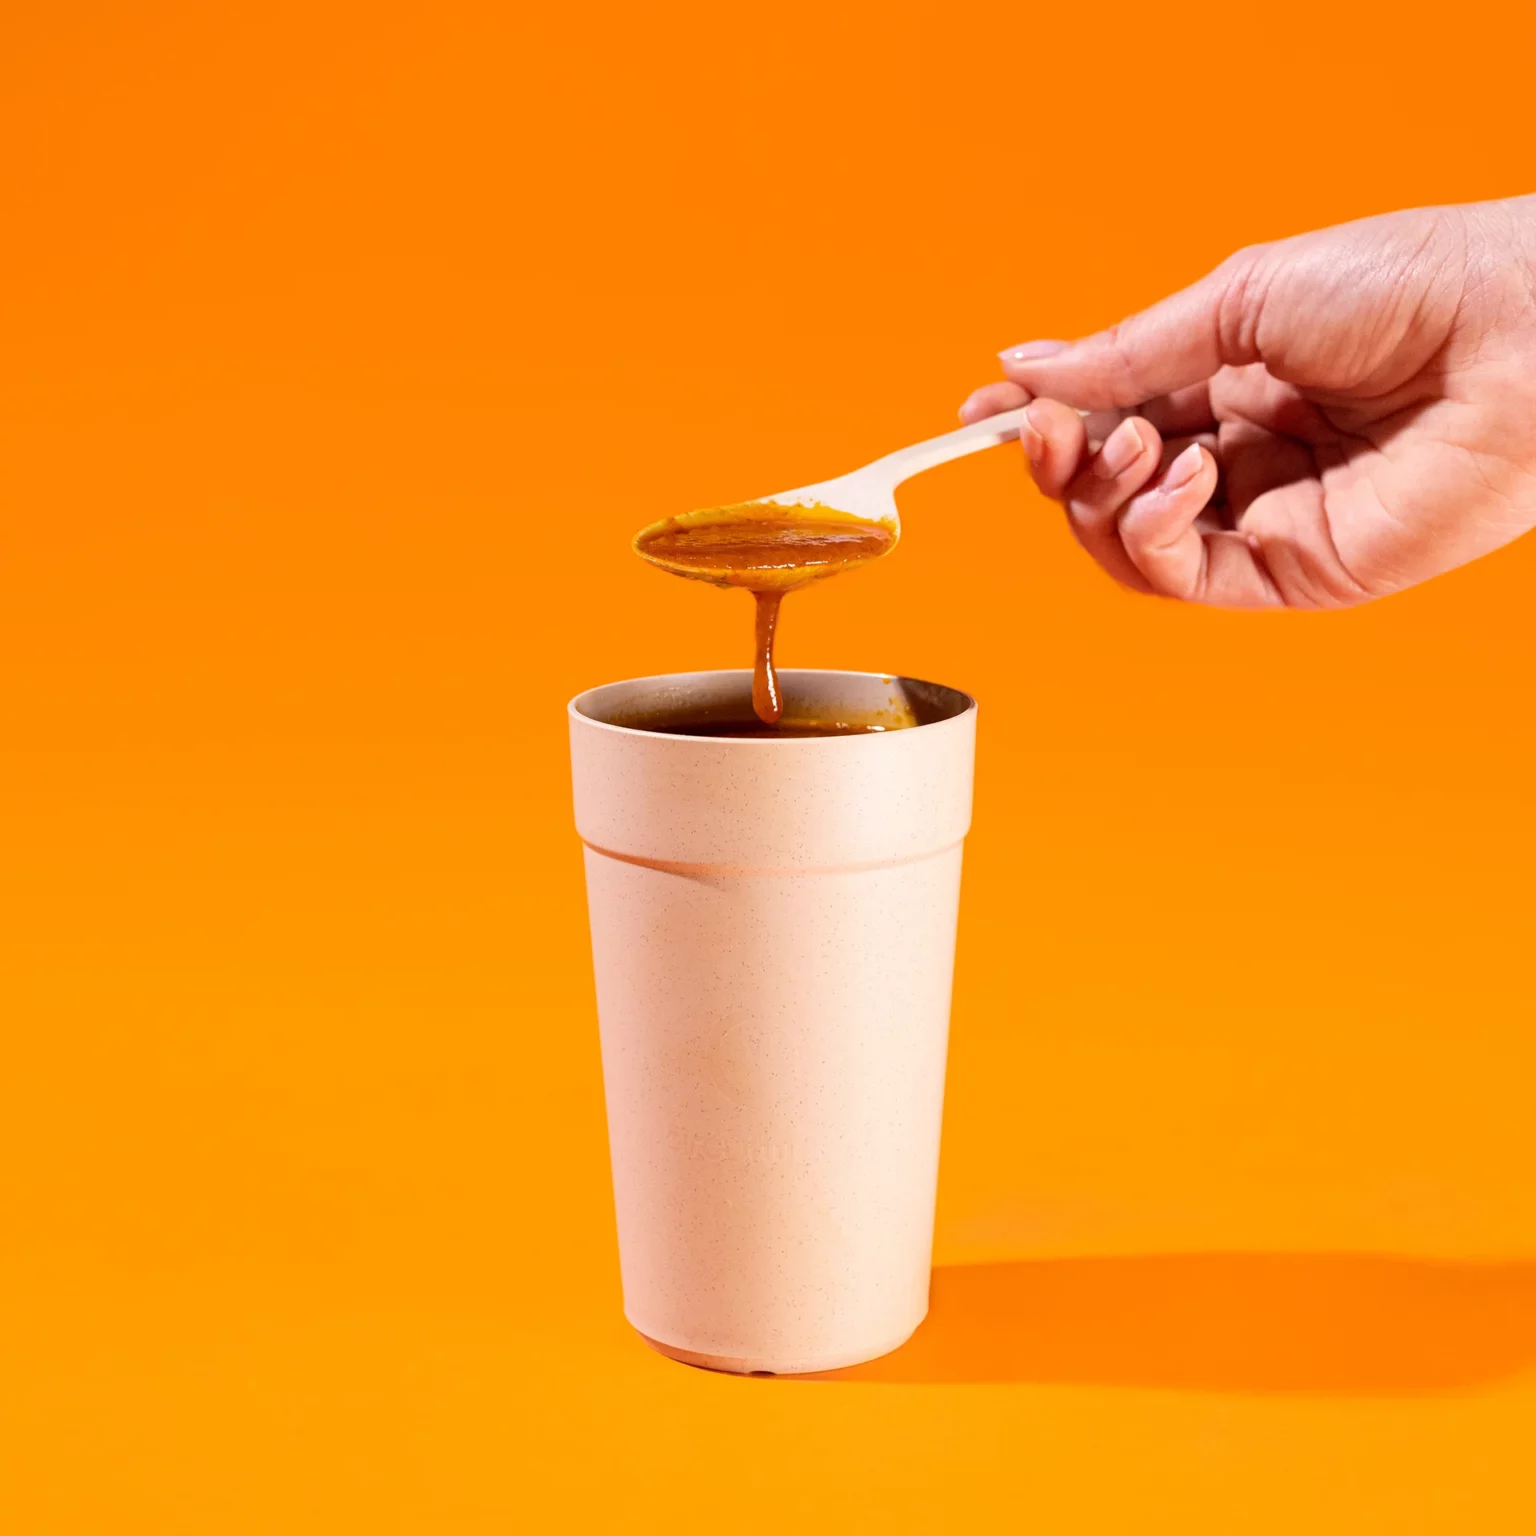 Cup met soep en hand